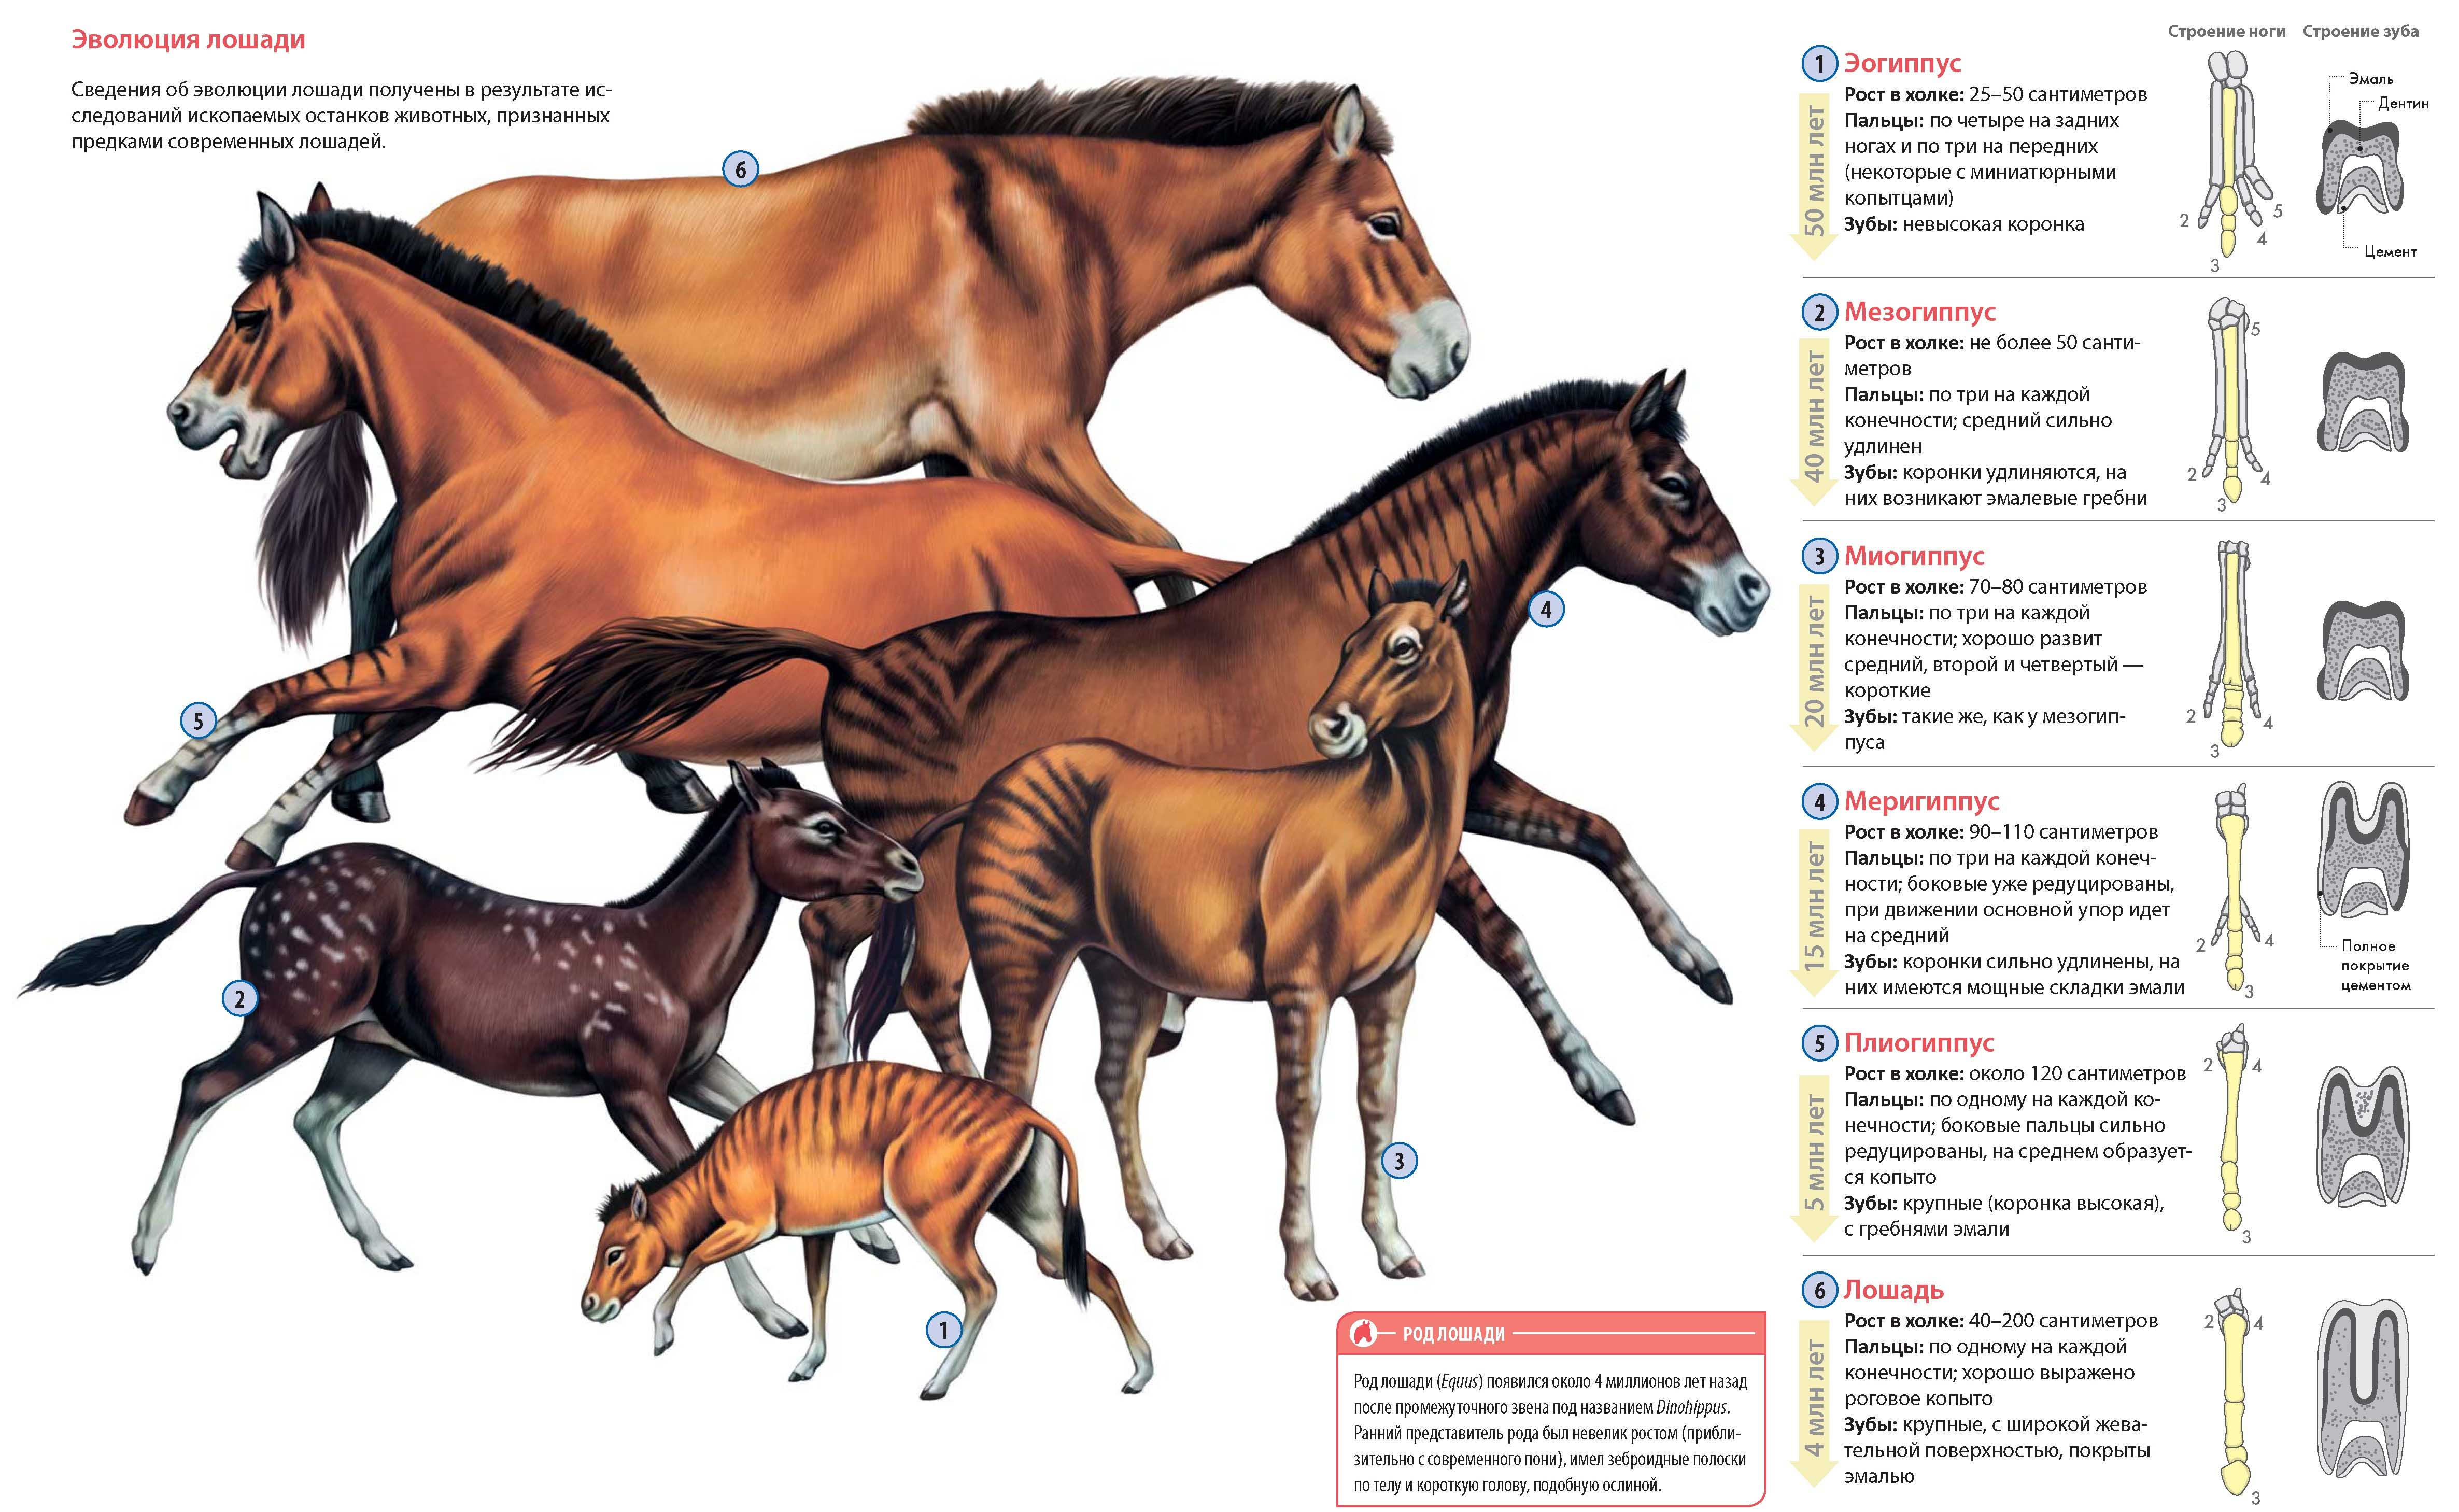 Эволюция лошади. Предки современных лошадей.
